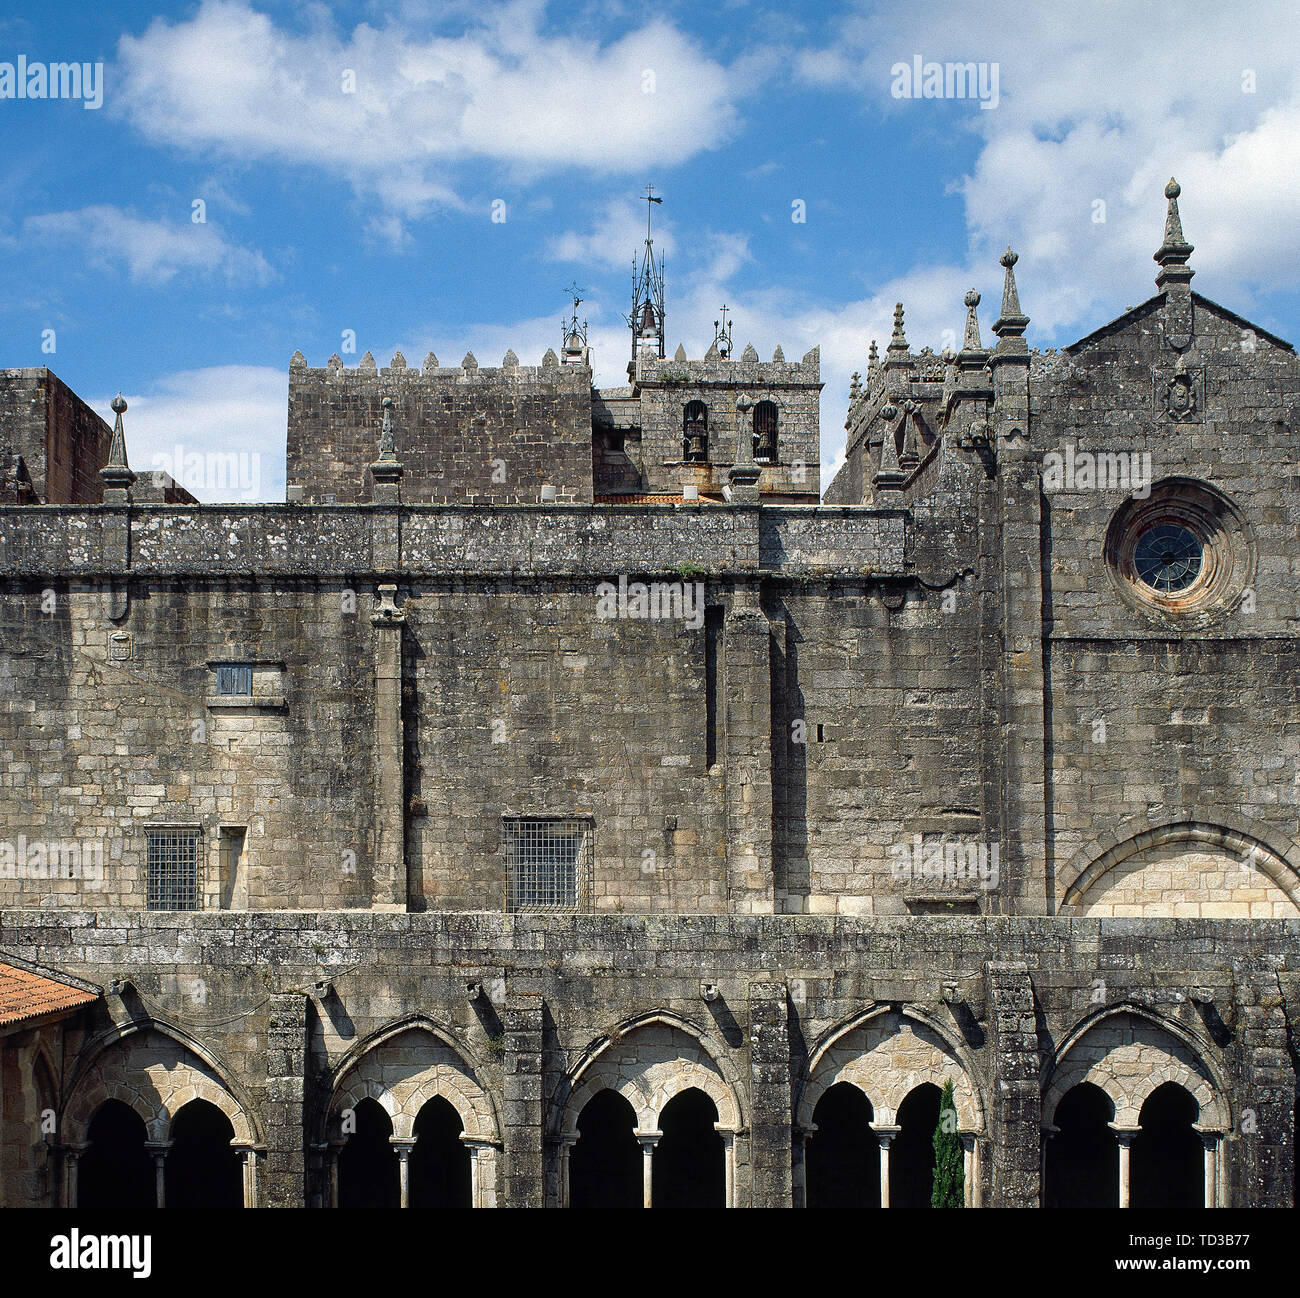 Spagna Galizia, nella provincia di Pontevedra, Tui. Cattedrale di Saint Mary. La sua costruzione iniziò nel XII secolo. Chiostro medievale, Cistercense di stile gotico del XIII secolo. Vista dalla Torre Soutomaior. Ristrutturato nel XV secolo. Foto Stock